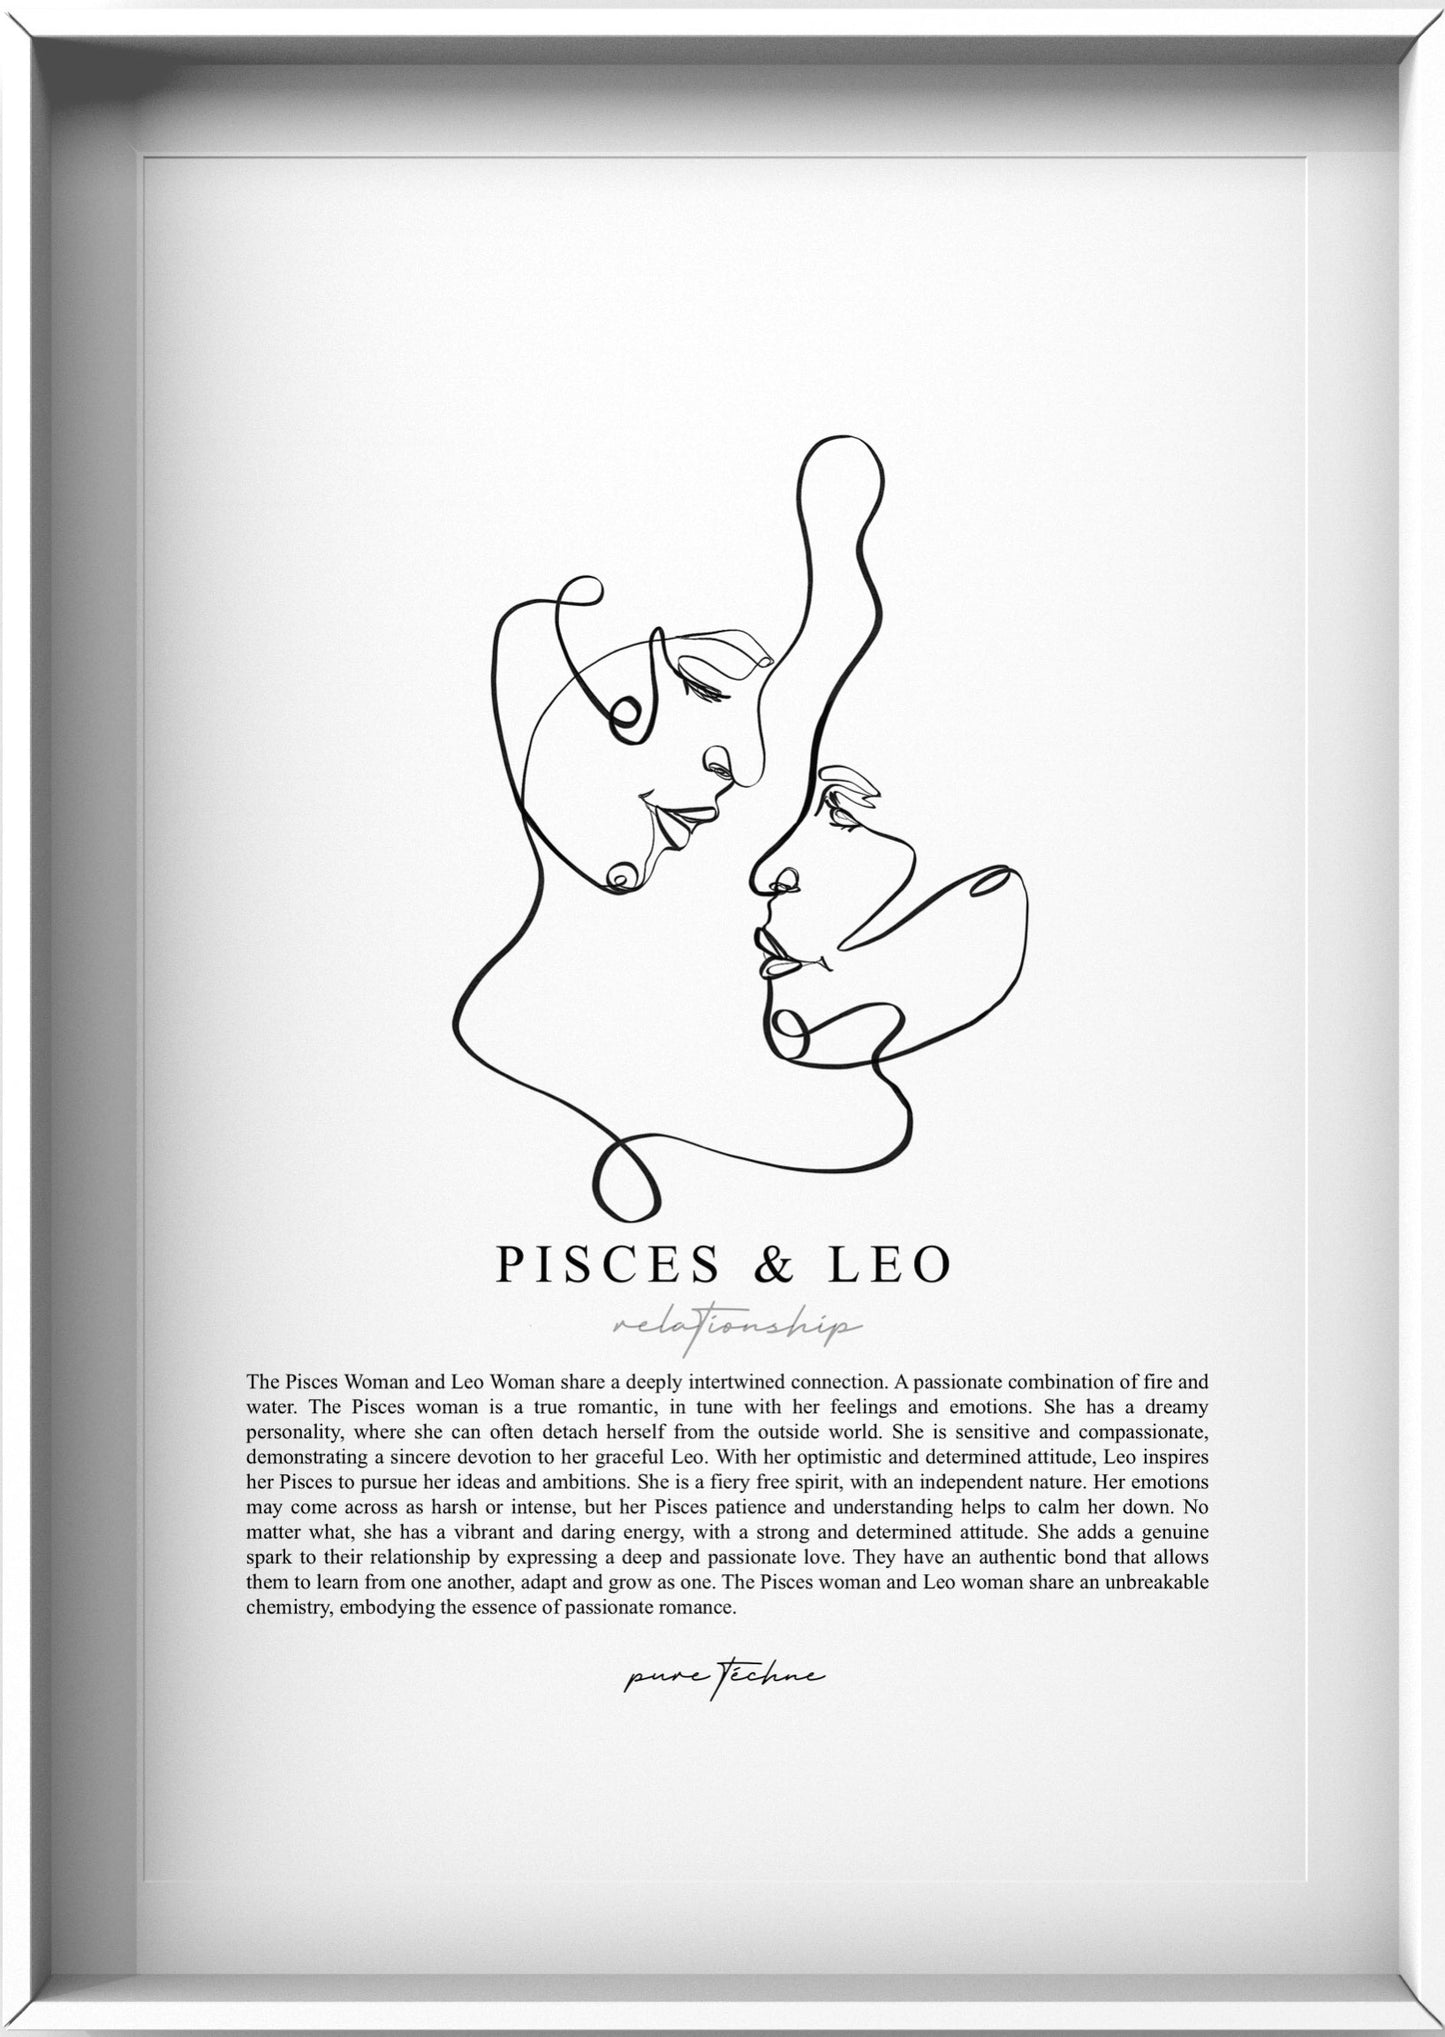 Pisces Woman & Leo Woman